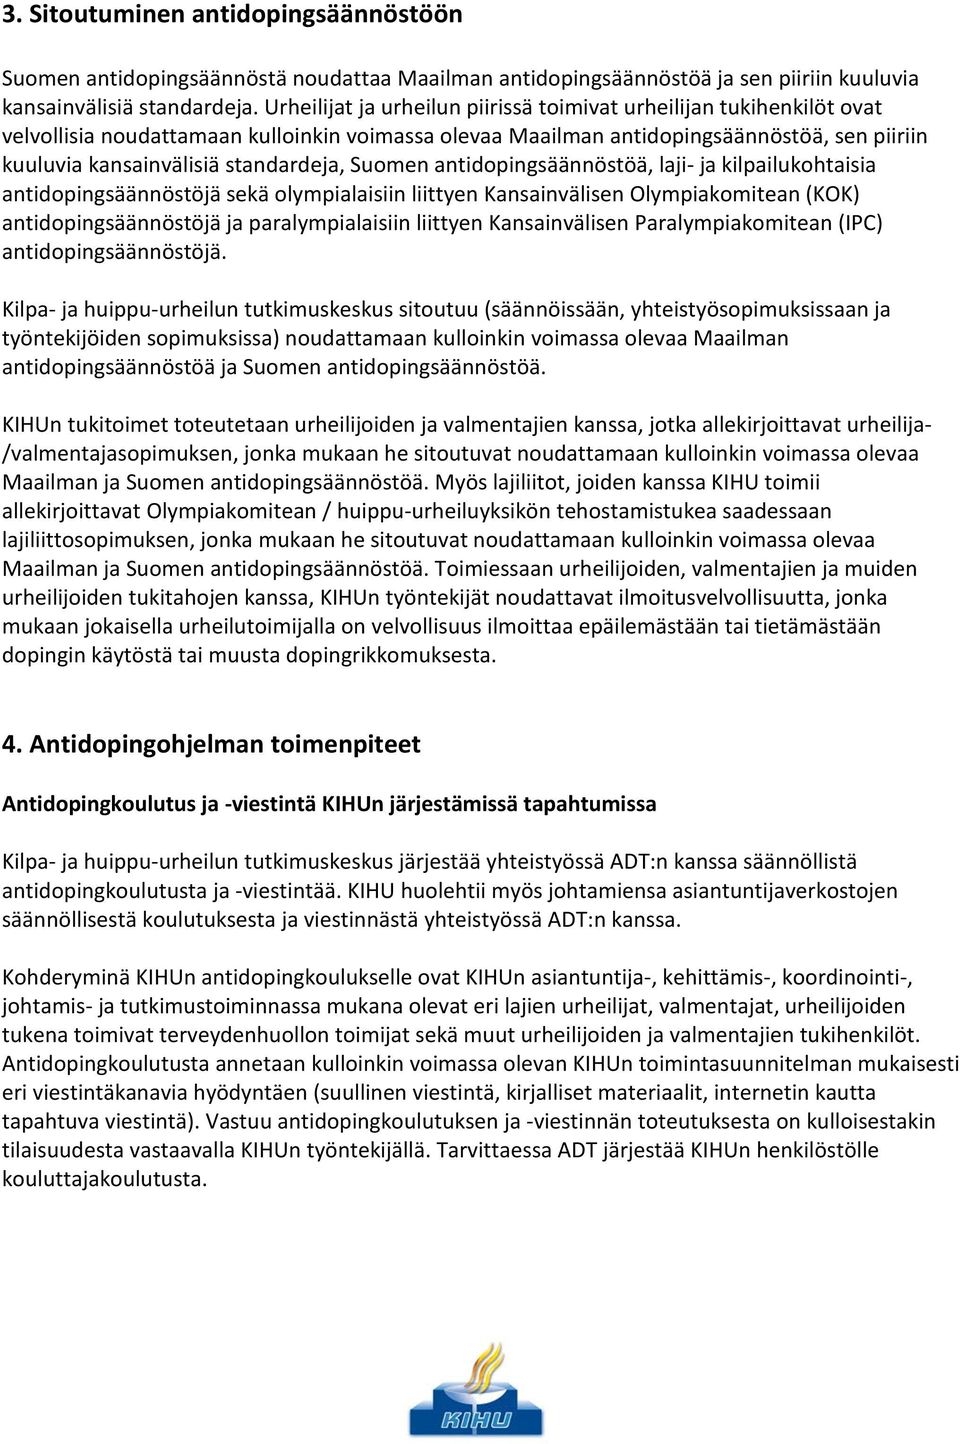 standardeja, Suomen antidopingsäännöstöä, laji- ja kilpailukohtaisia antidopingsäännöstöjä sekä olympialaisiin liittyen Kansainvälisen Olympiakomitean (KOK) antidopingsäännöstöjä ja paralympialaisiin